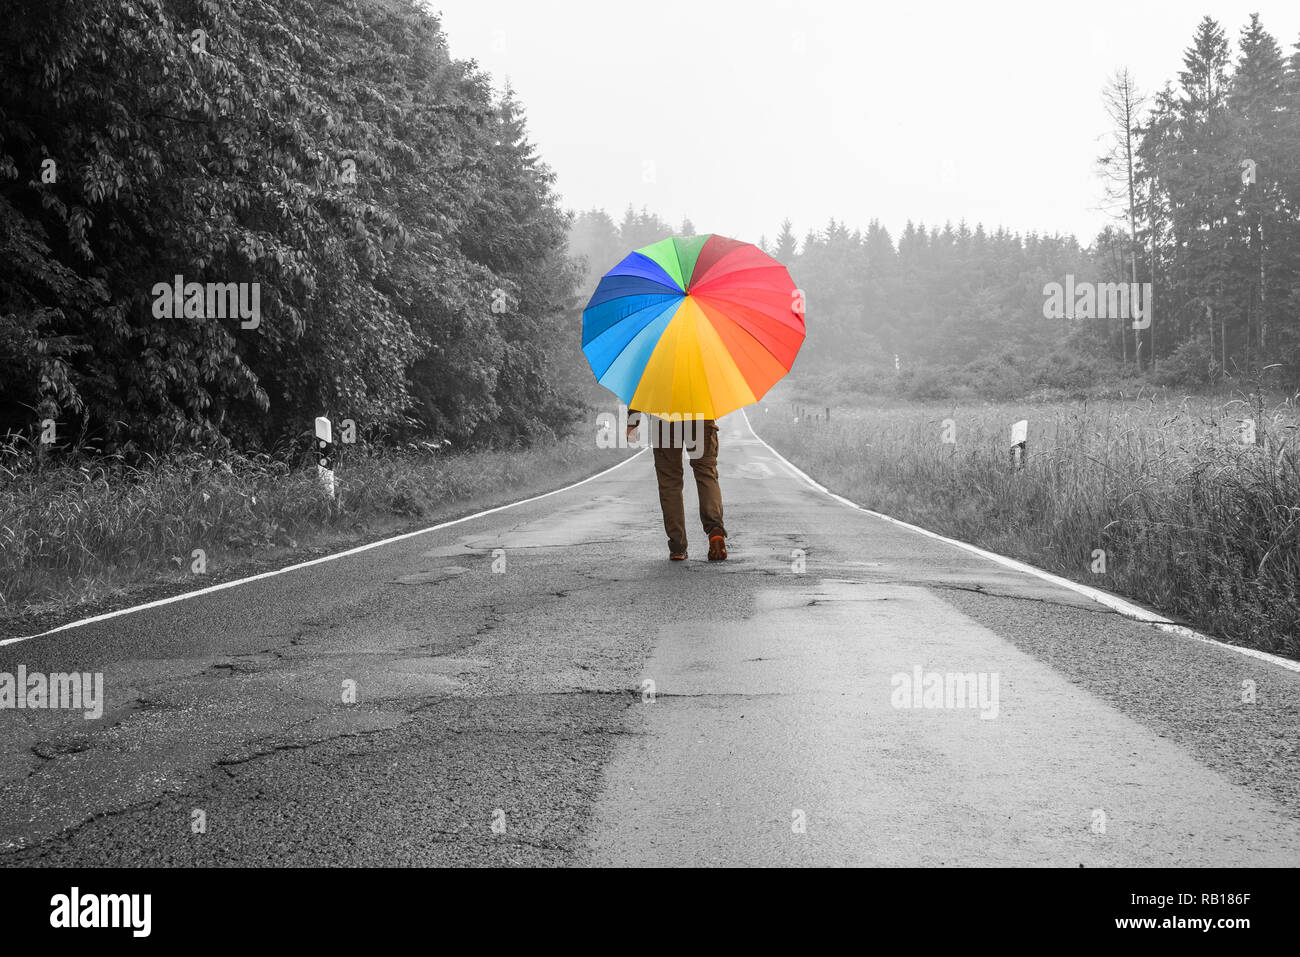 Personne avec un grand parapluie de couleur marche sur une route, vue monochrome Banque D'Images